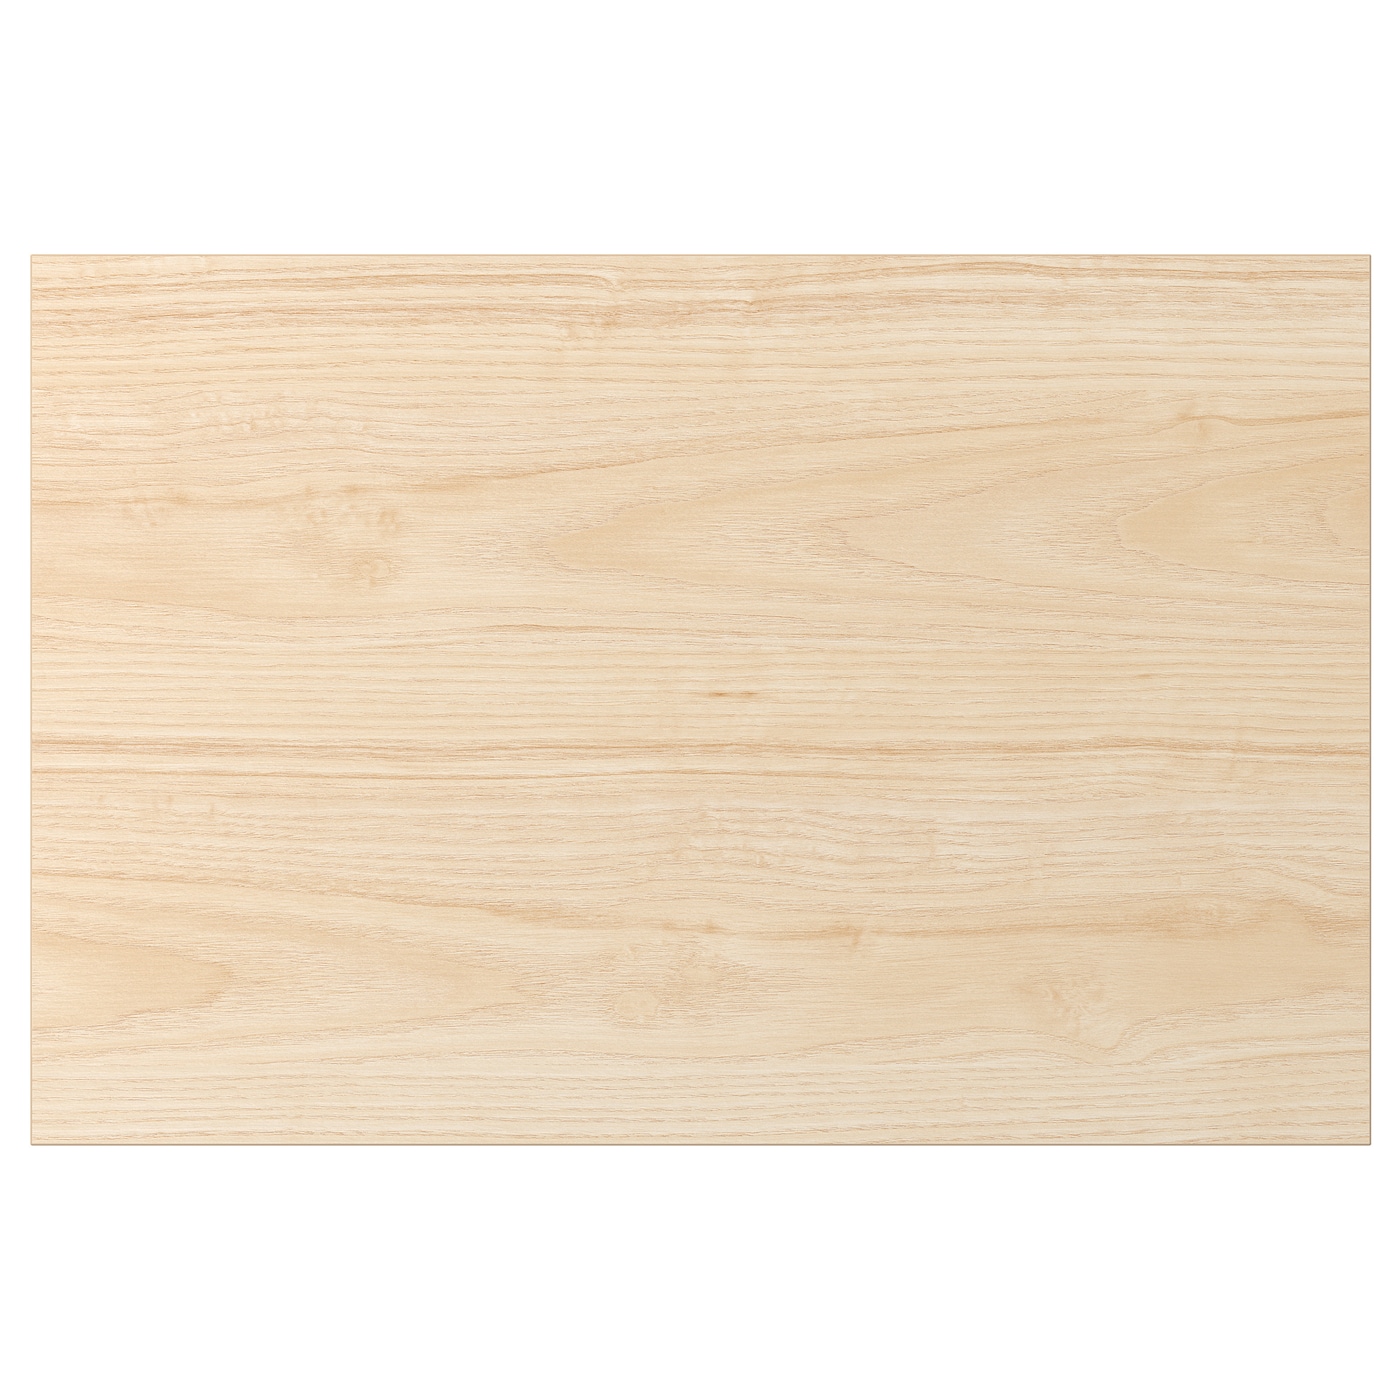 Дверца - ASKERSUND IKEA/ АСКЕРСУНД ИКЕА,  60x40 см, под беленый дуб